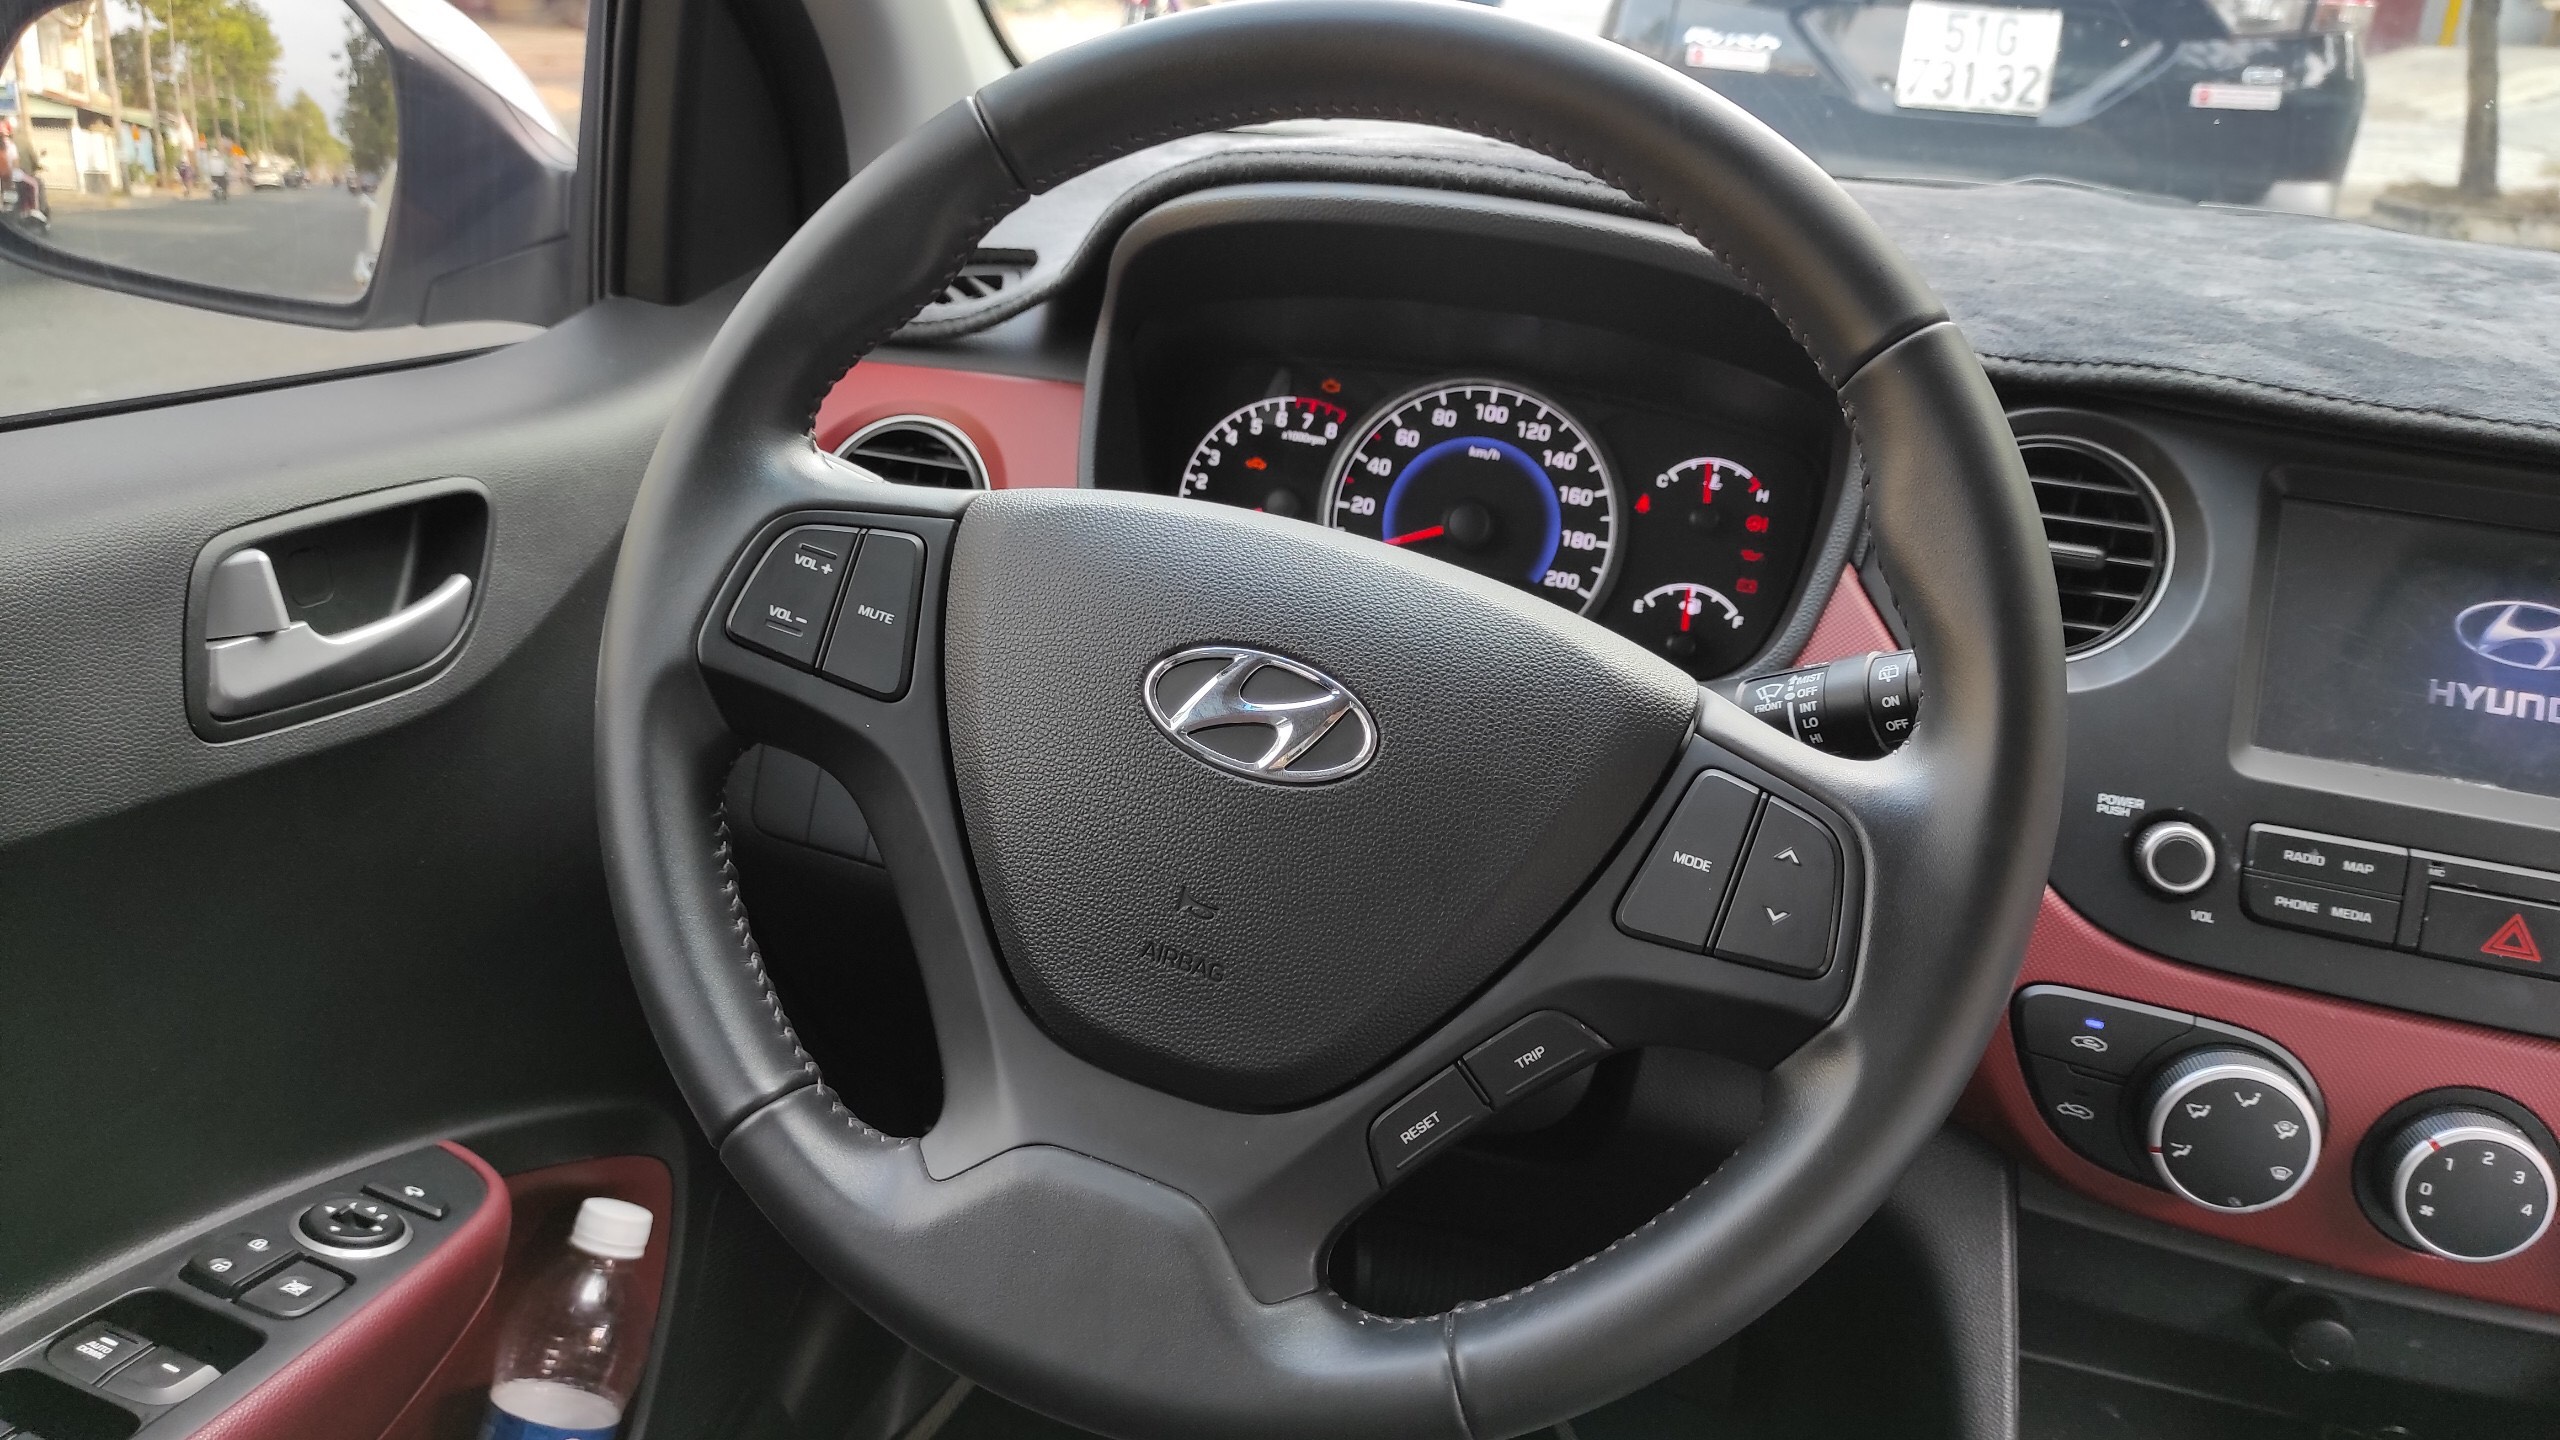 Hyundai i10 1.2 AT 2017 HB